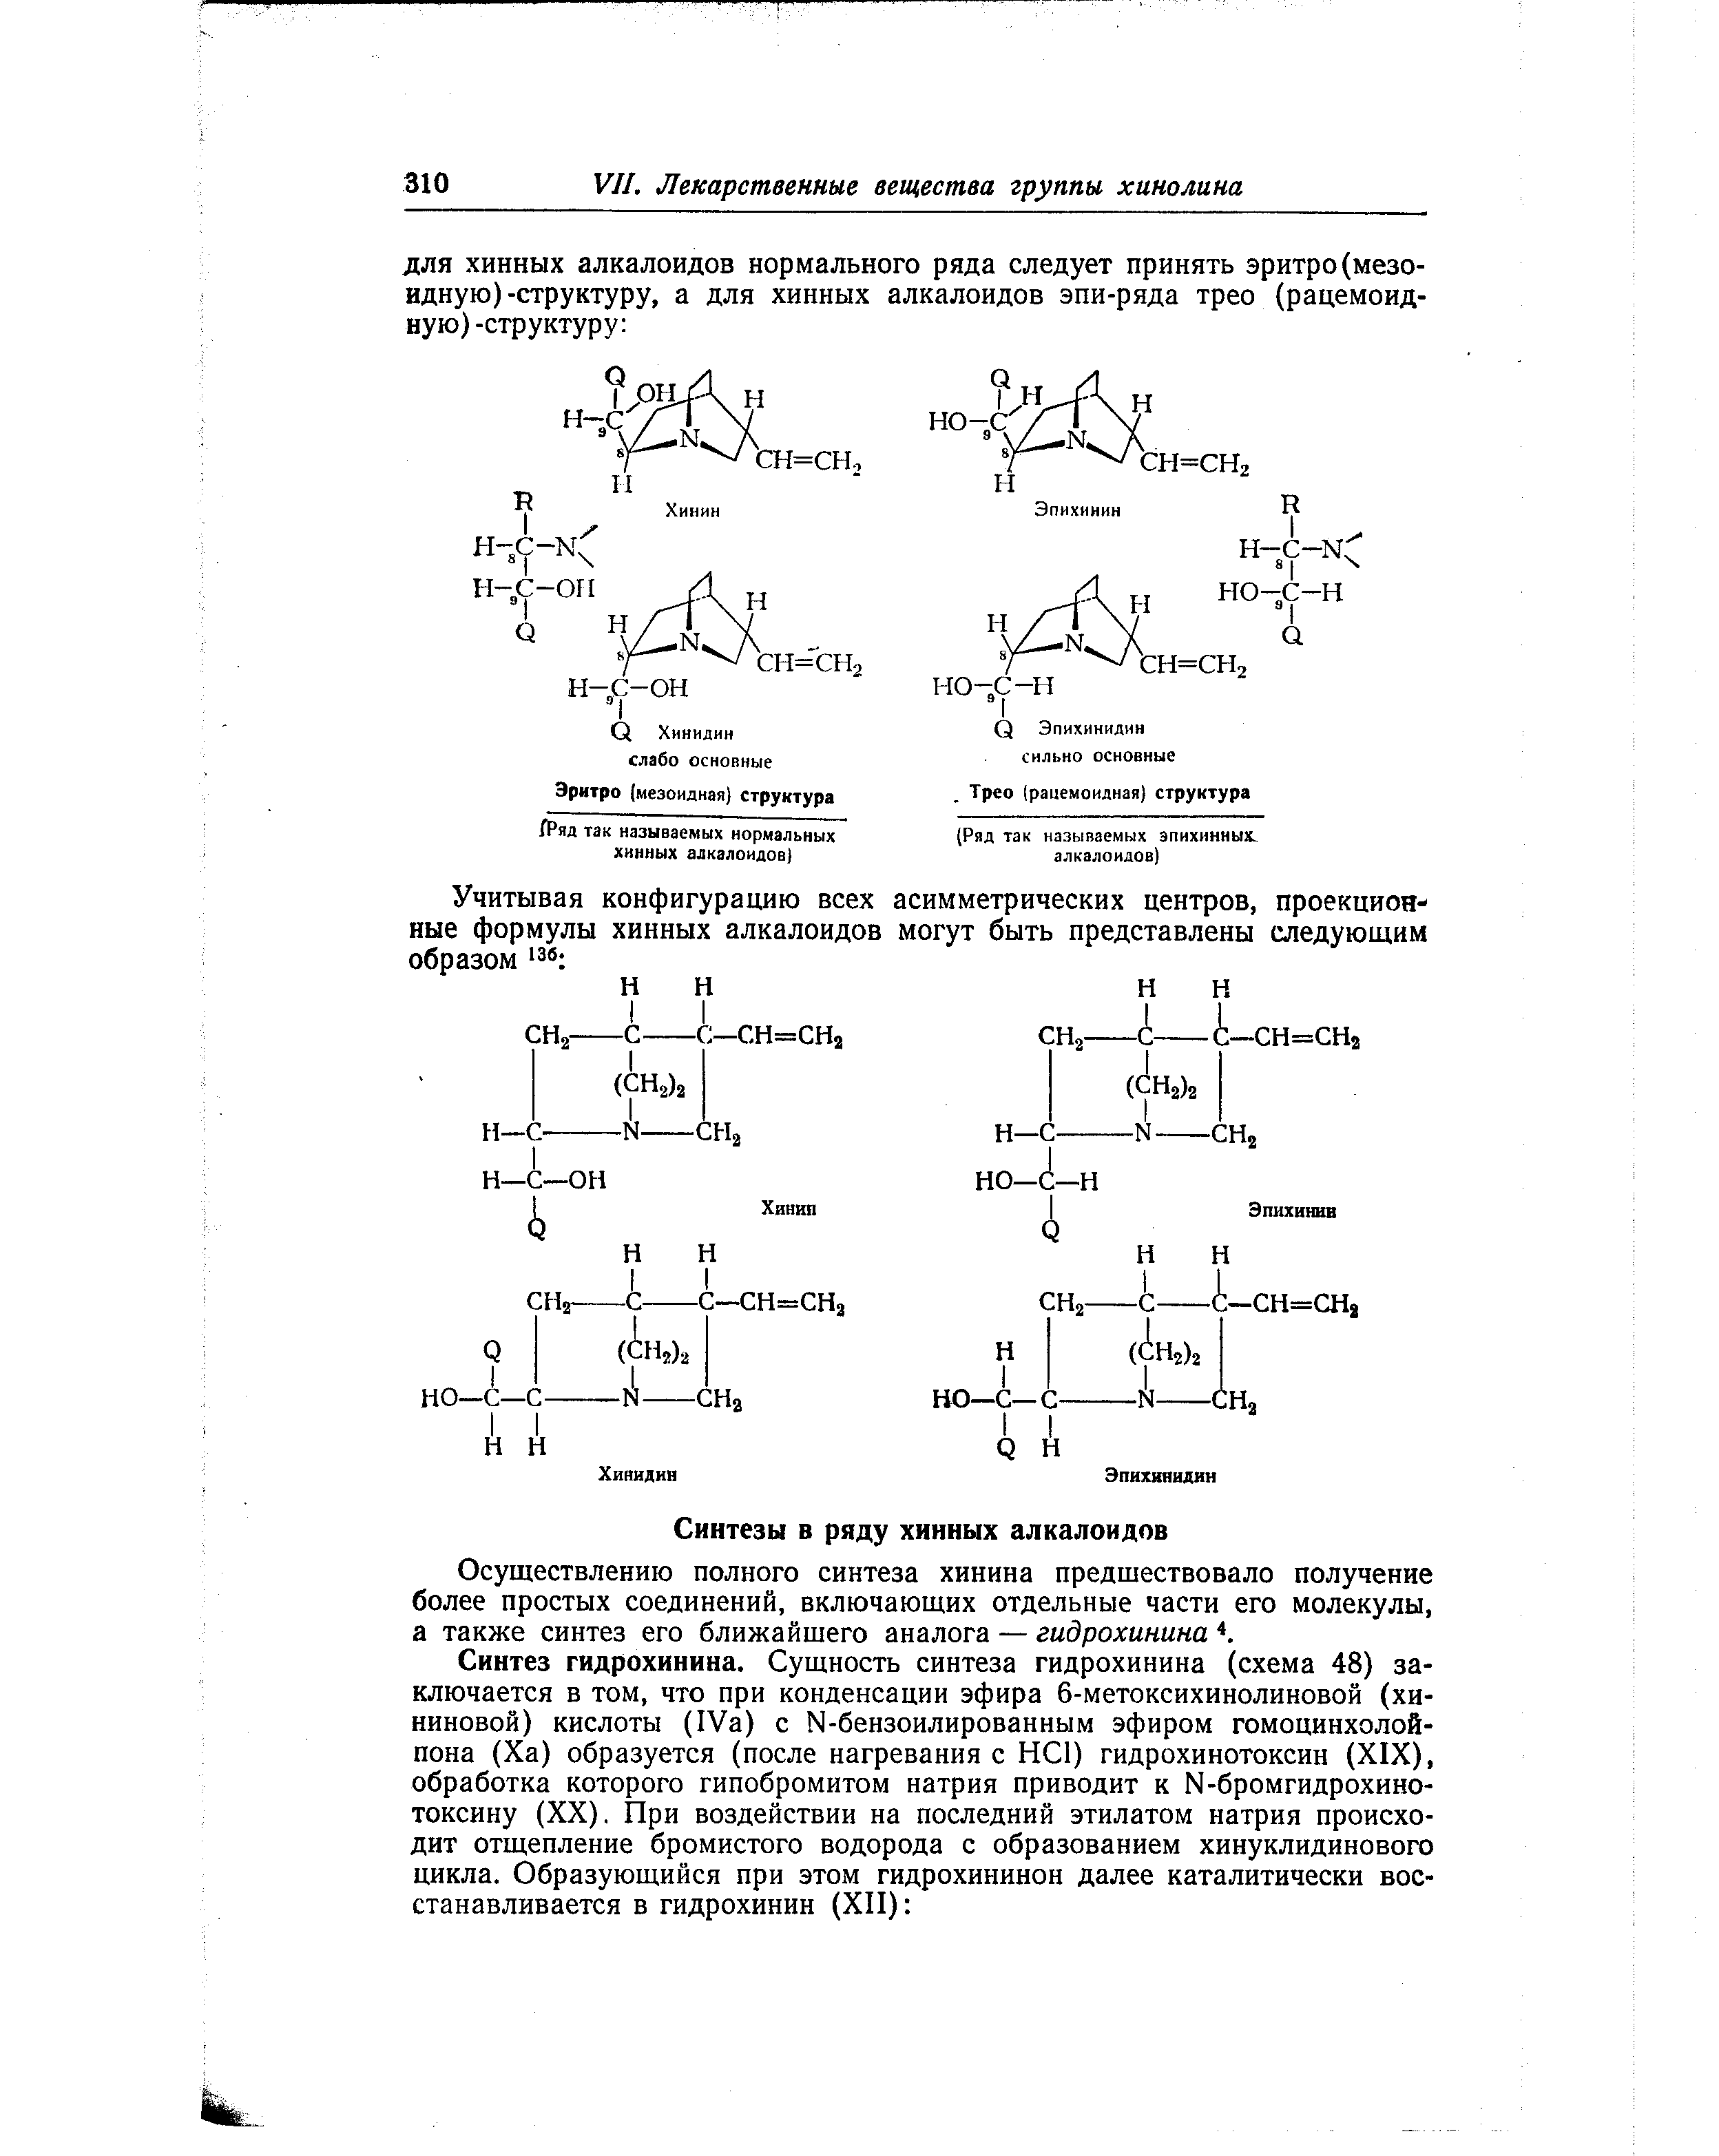 Осуществлению полного синтеза хинина предшествовало получение более простых соединений, включающих отдельные части его молекулы, а также синтез его ближайшего аналога — гидрохинина 4.